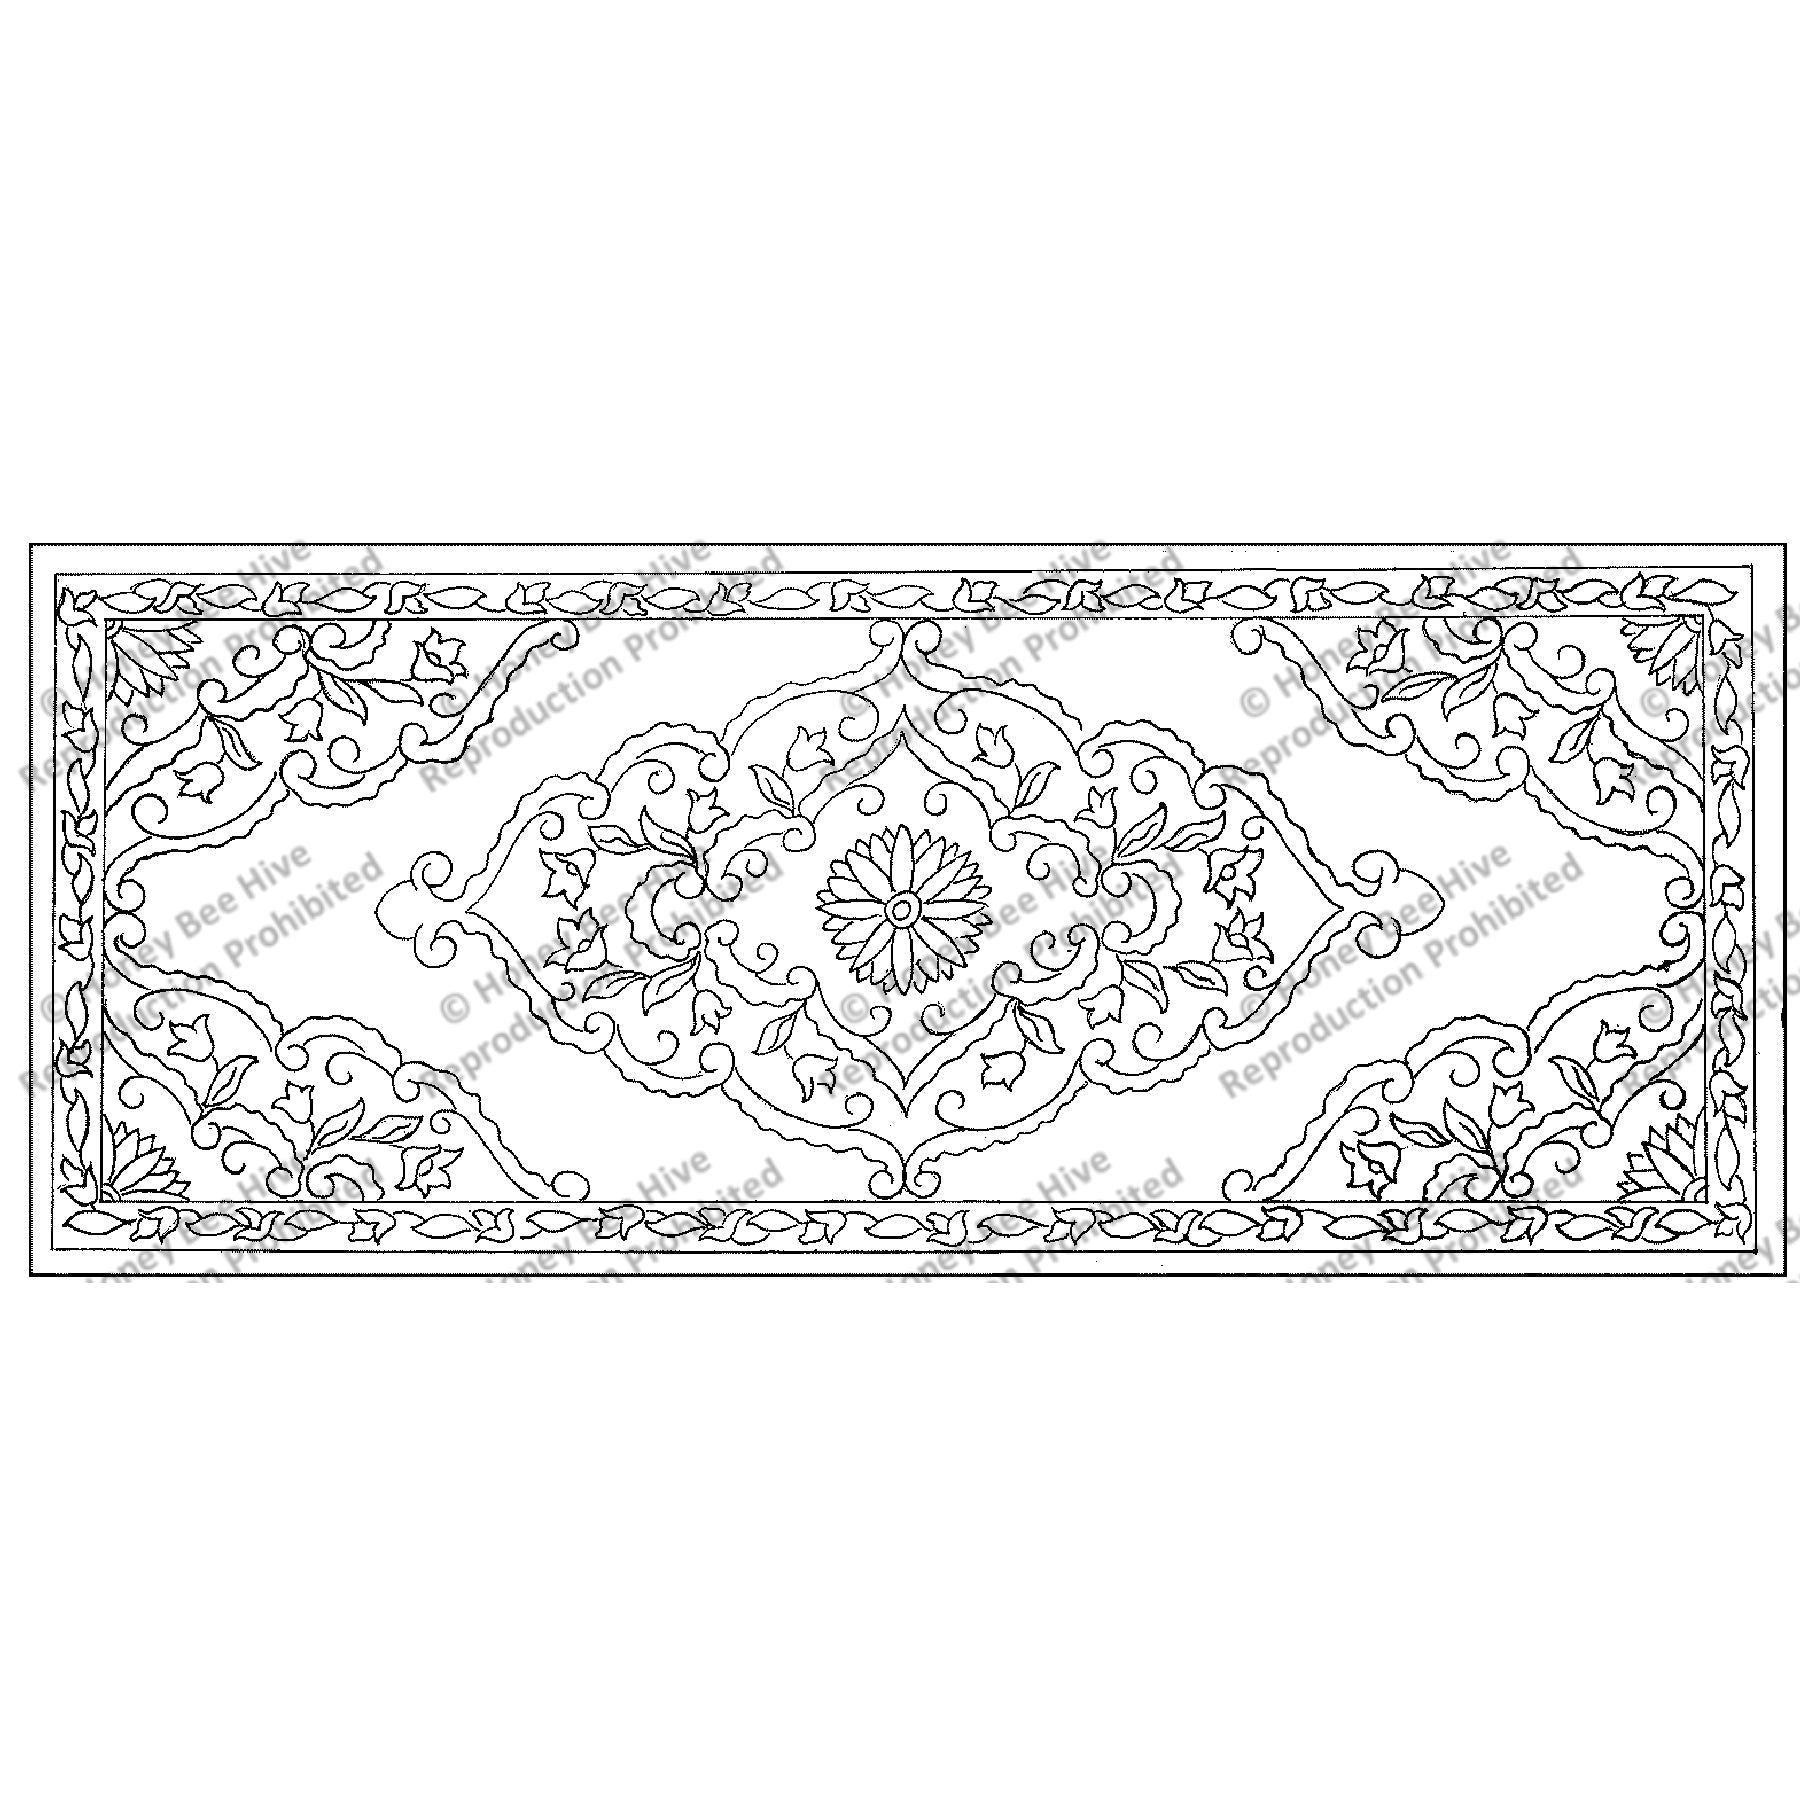 Kerman Bench, rug hooking pattern